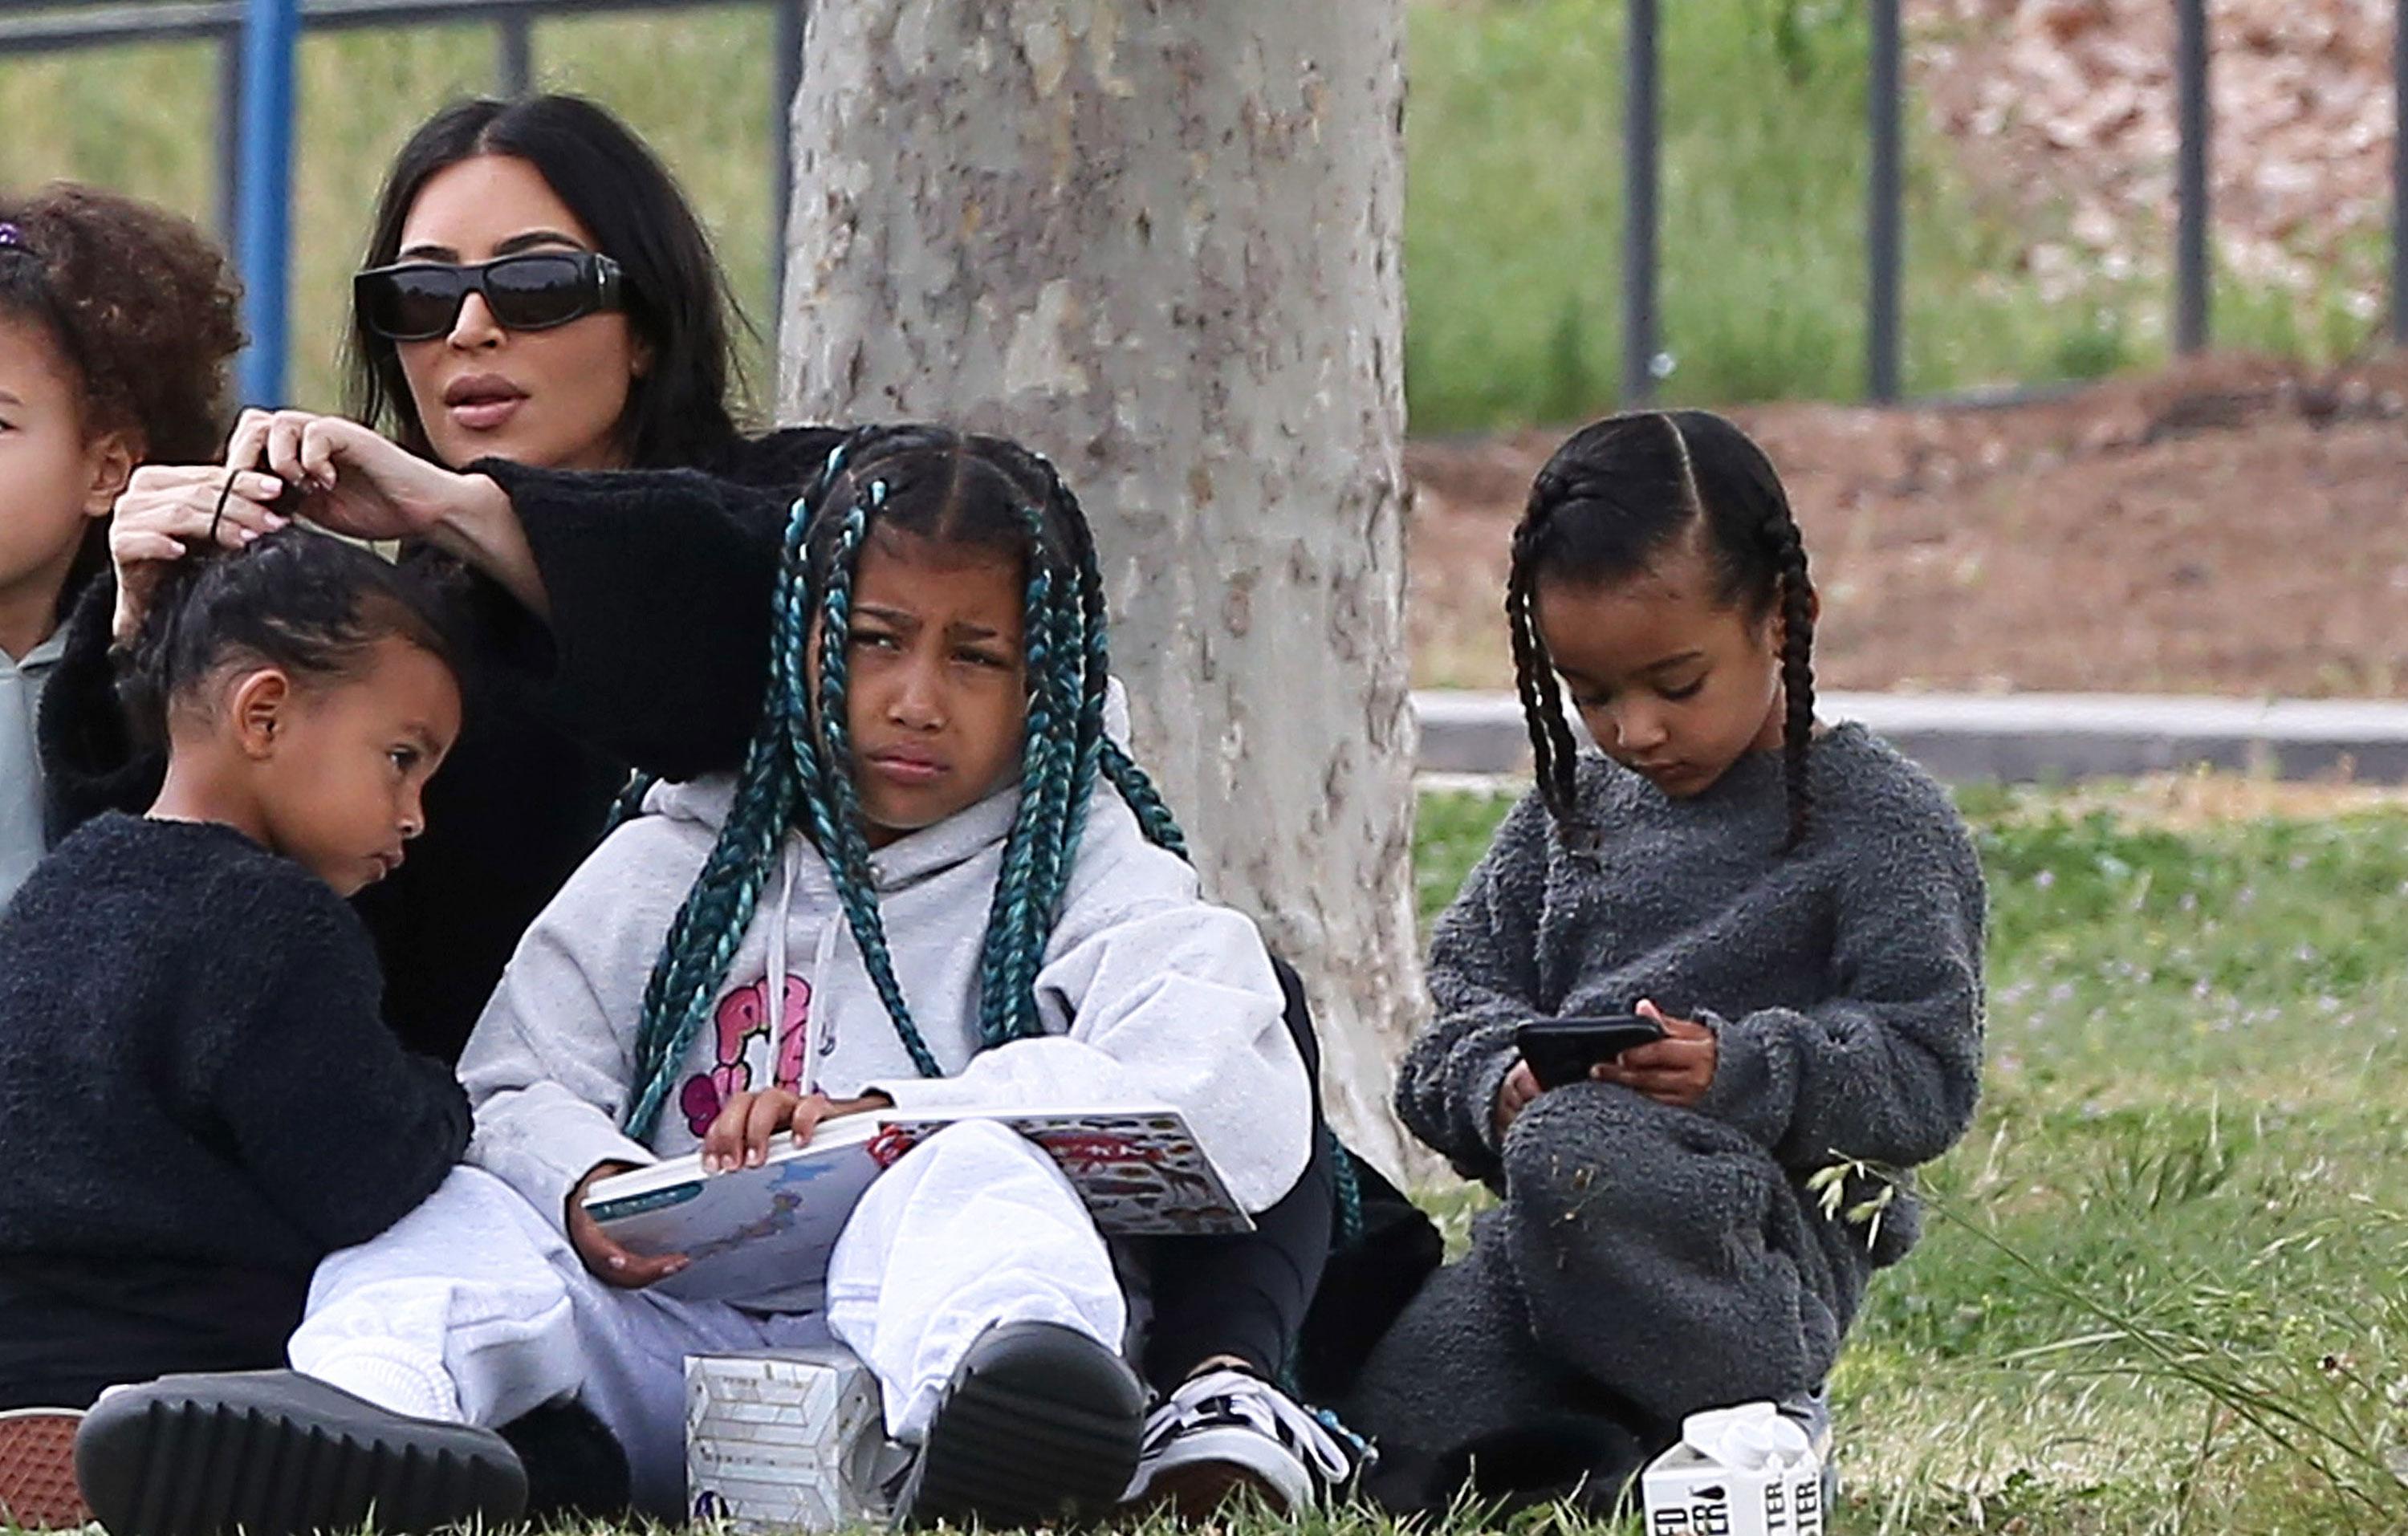 Saint West looks ADORABLE with cornrows as Kim Kardashian takes